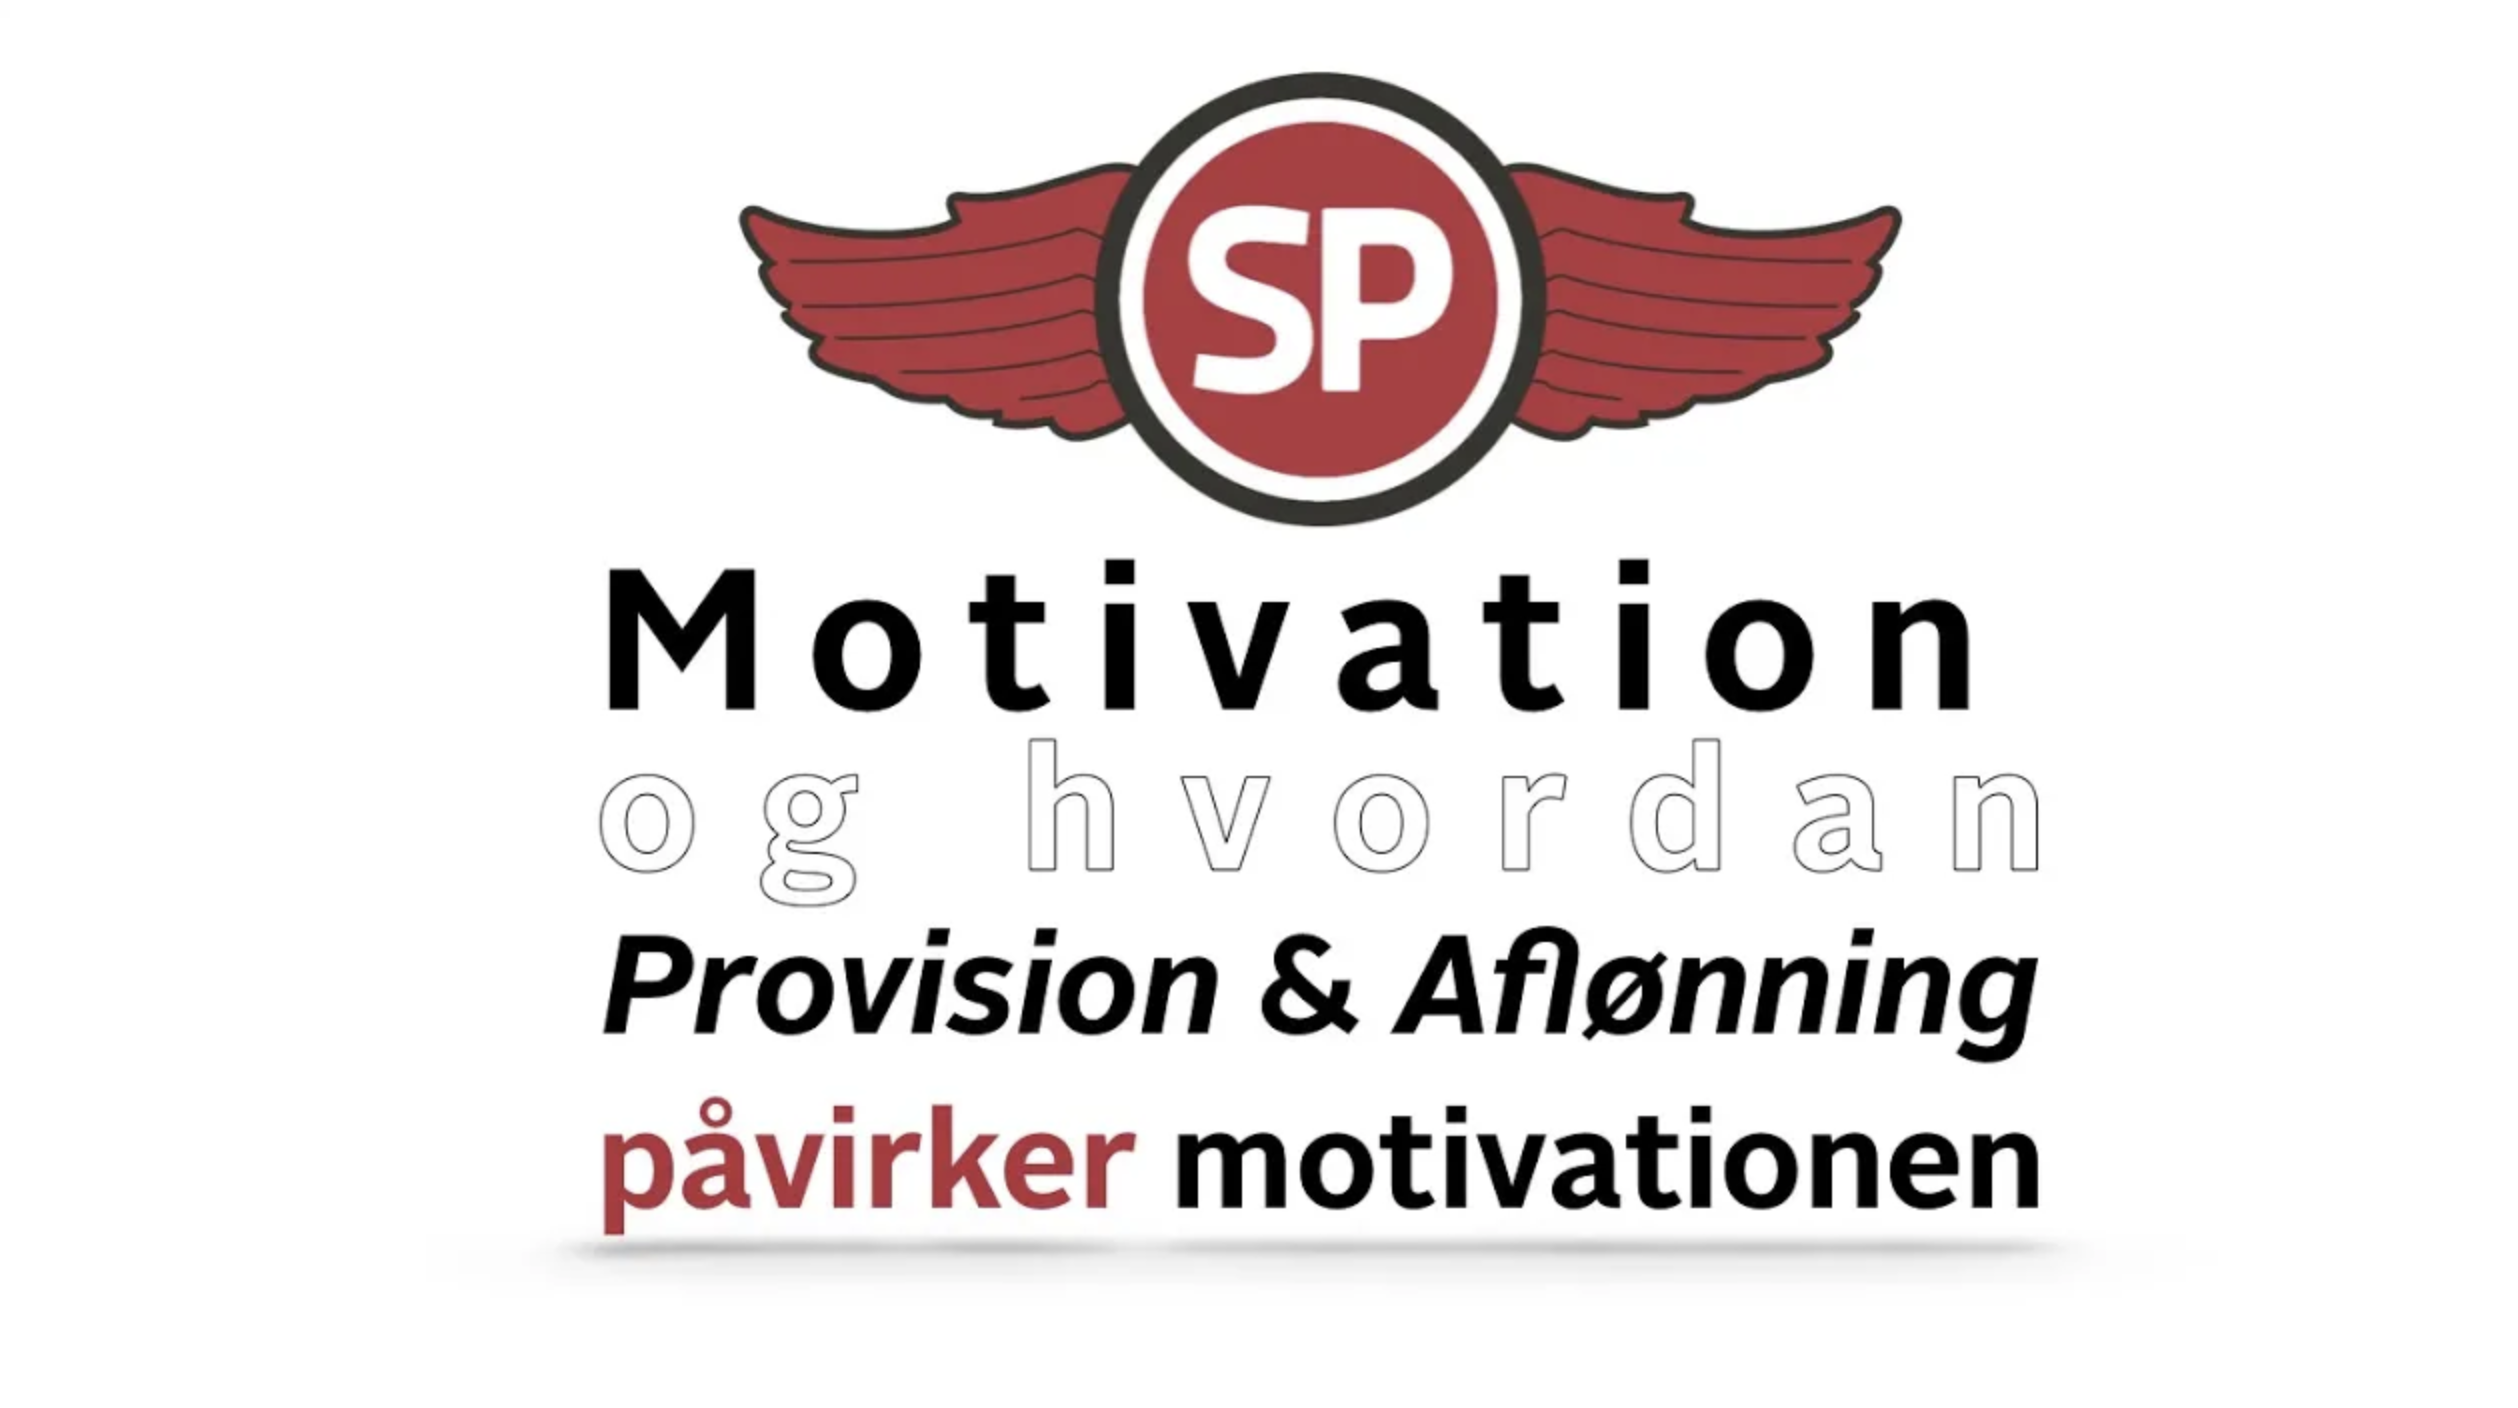 SalgsPiloterne Tony Evald Clausen Motivation og hvordan provision og aflønning påvirker motivationen